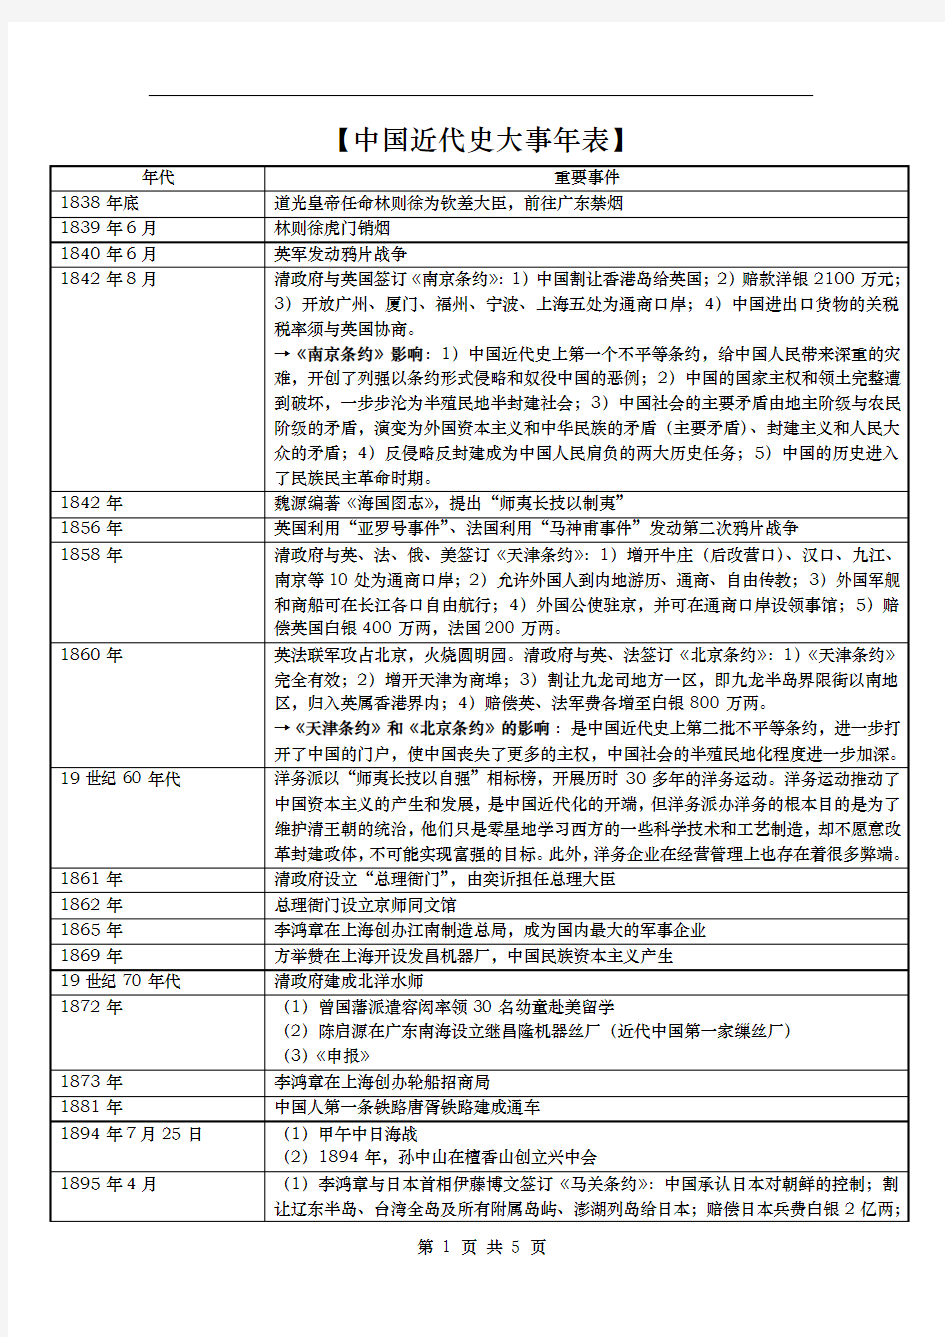 中国近代史大事年表(1938年-2001年)